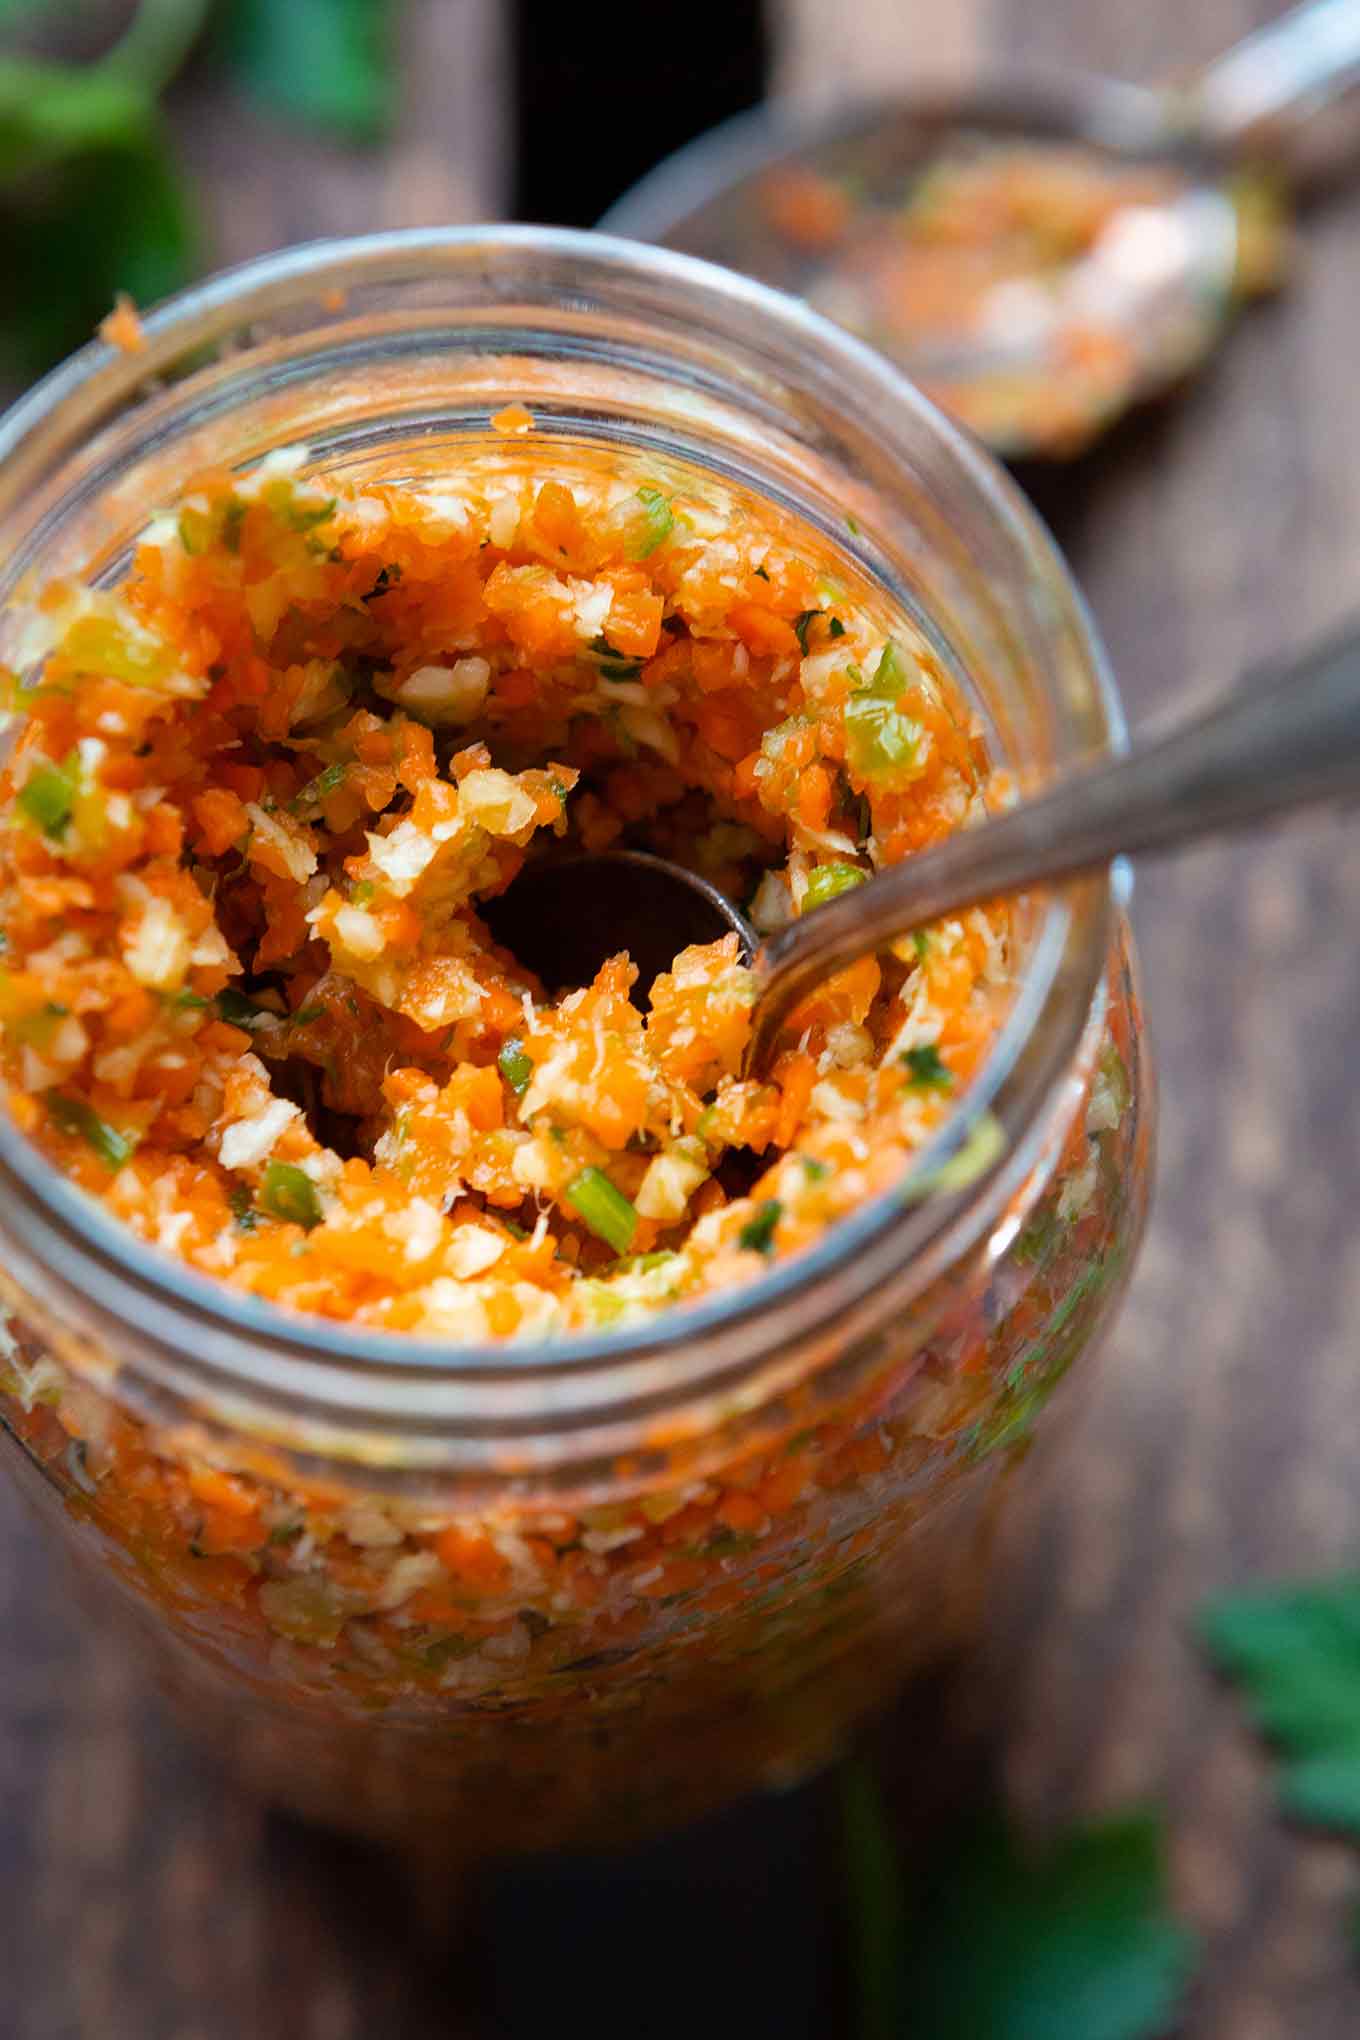 Gemüsebrühe selber machen. Für dieses einfache 10-Minuten Rezept brauchst du nur Suppengrün und Salz - so gut! - Kochkarussell.com #gemüsebrühe #selbermachen #rezept #einfach